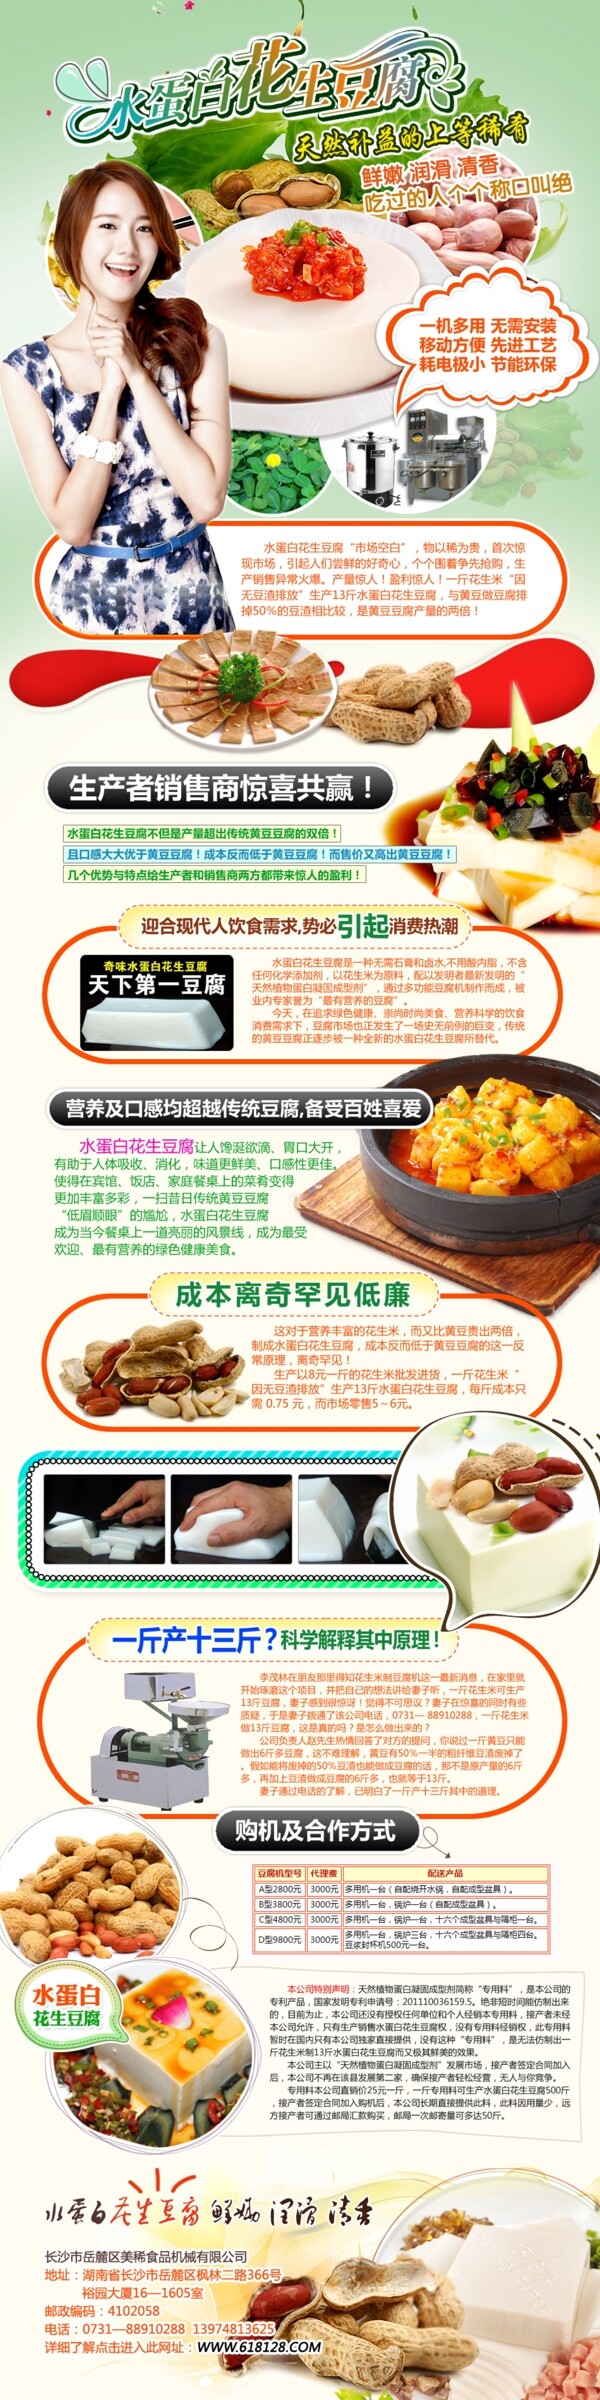 花生豆腐招商广告设计无网页代码